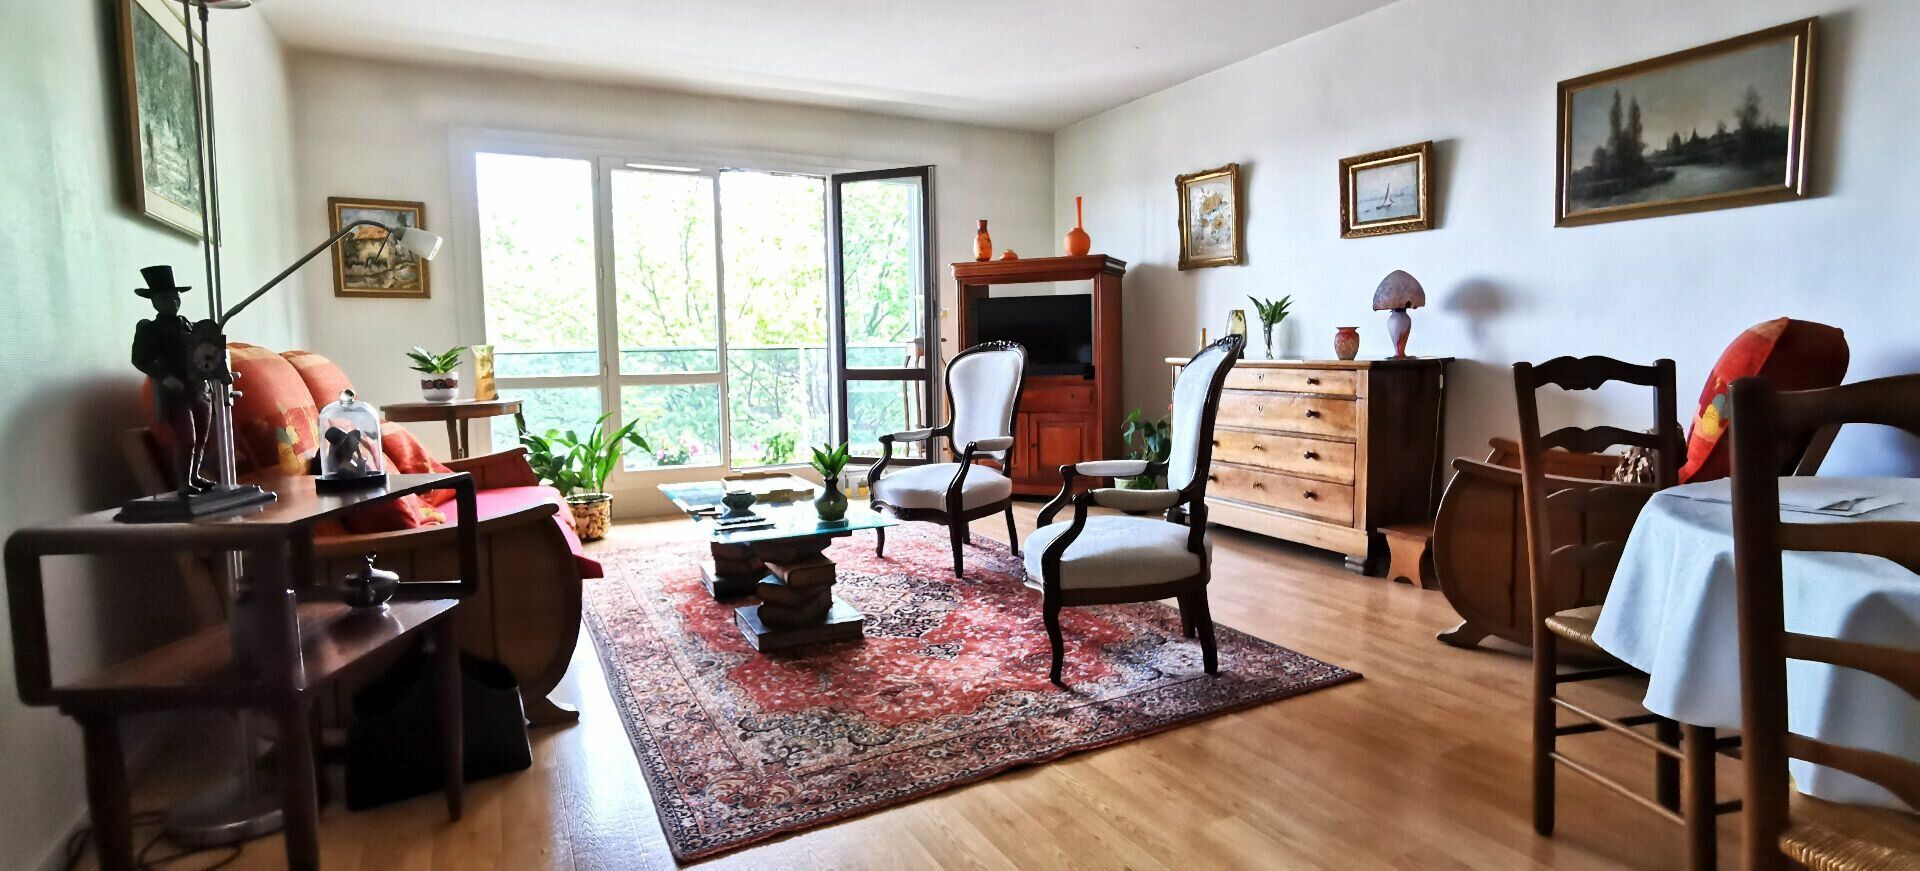 Appartement à vendre 3 88m2 à Amiens vignette-1